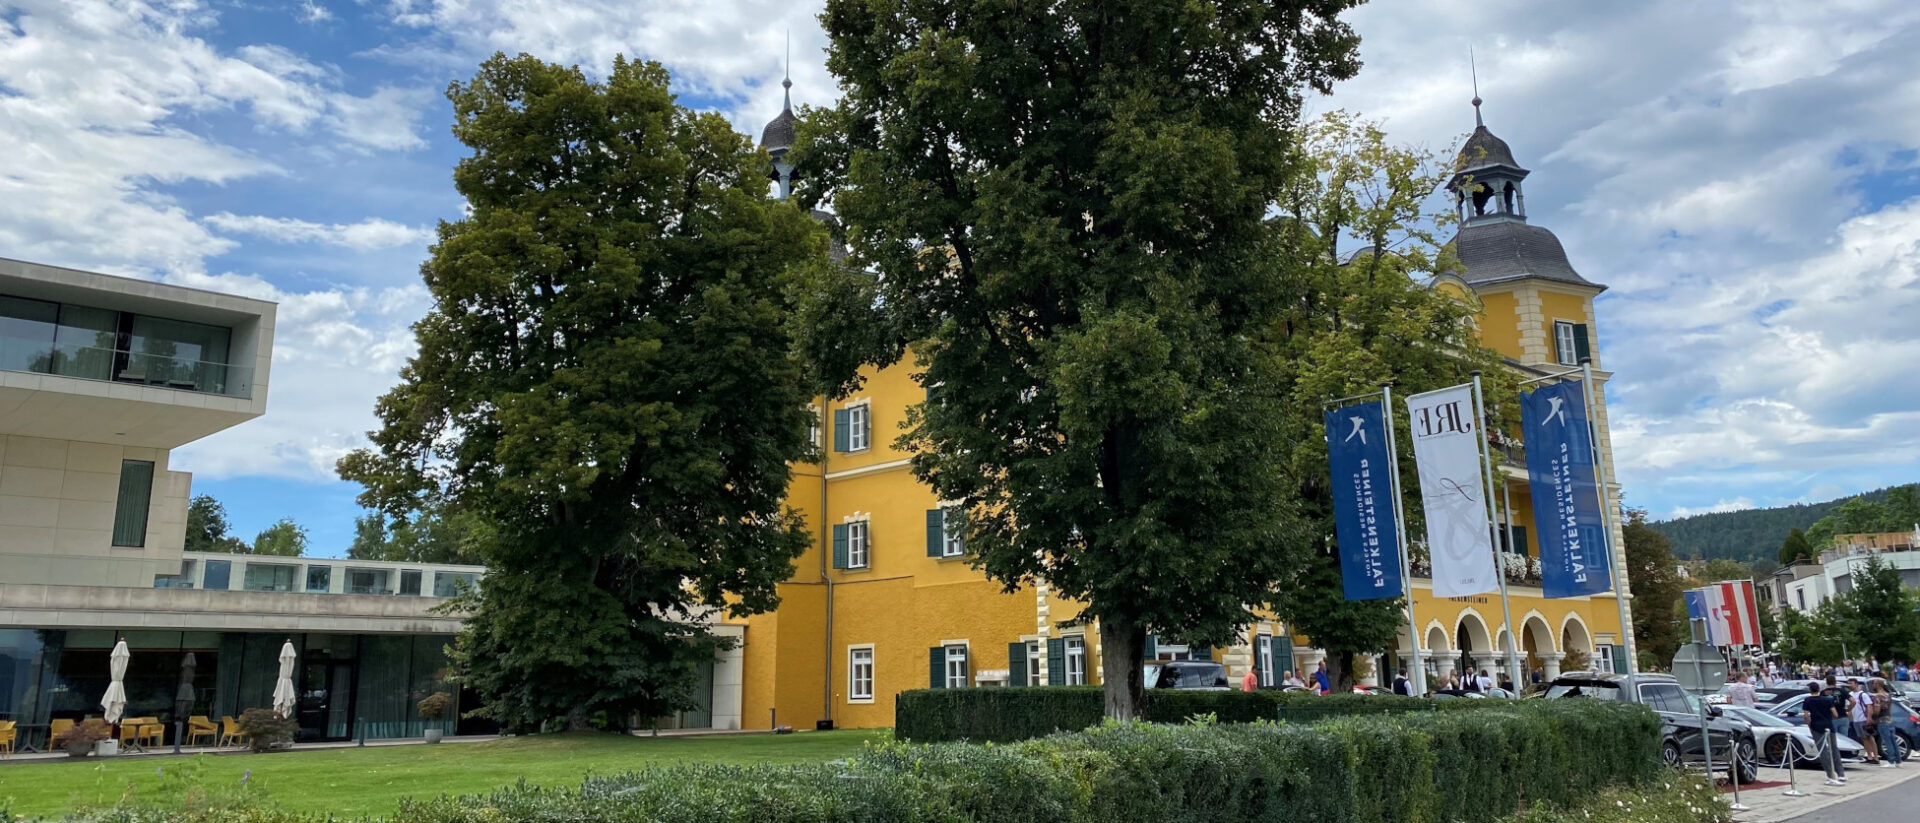 Ein Schloss am Wörthersee - bekannt aus der gleichnamigen ZDF-Serie.